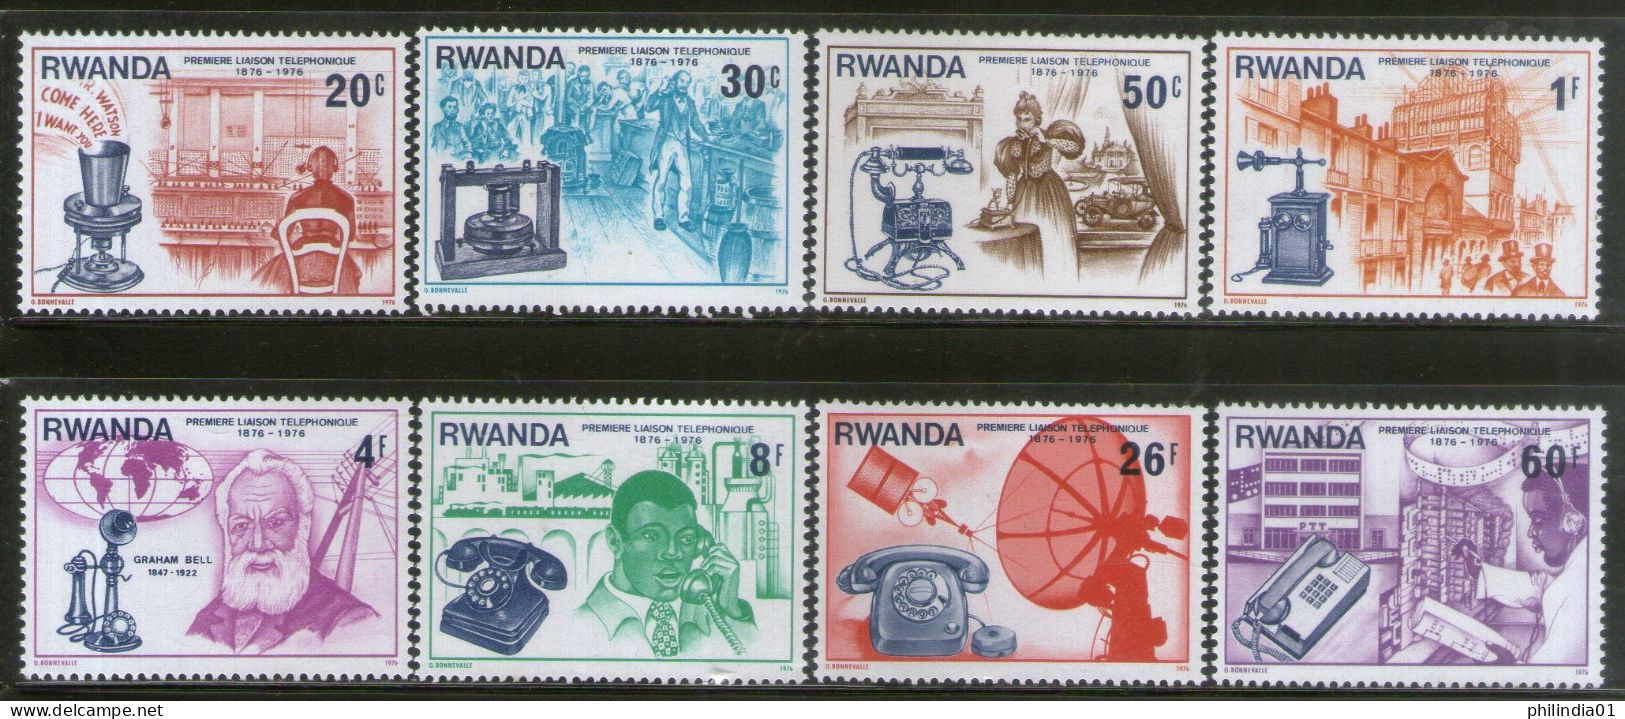 Rwanda 1981 Telephone Centenary Sc 746-53 MNH # 2289 - Telekom